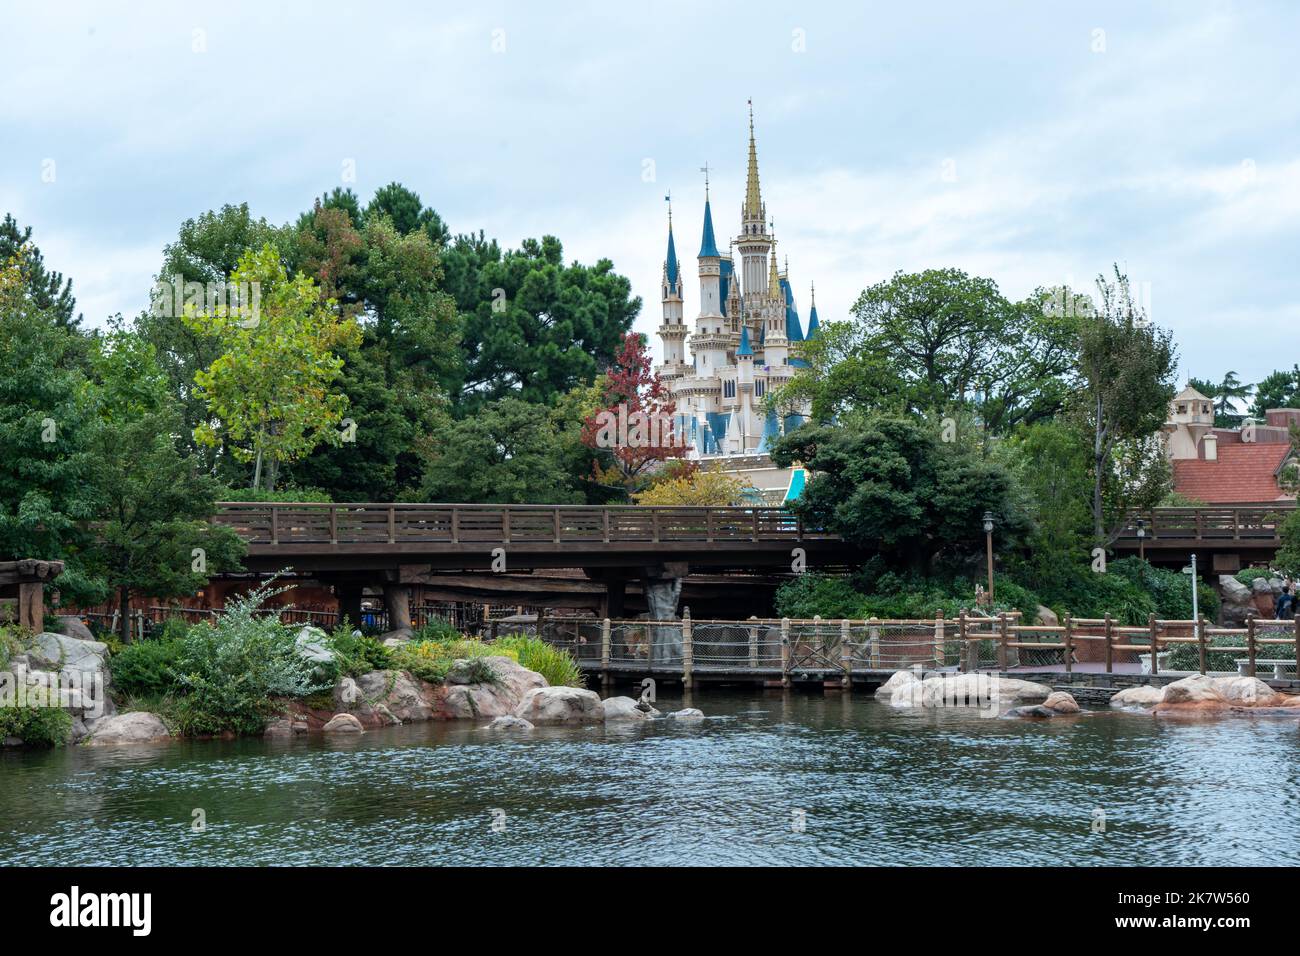 Scenic view of Disneyland, Tokyo Stock Photo